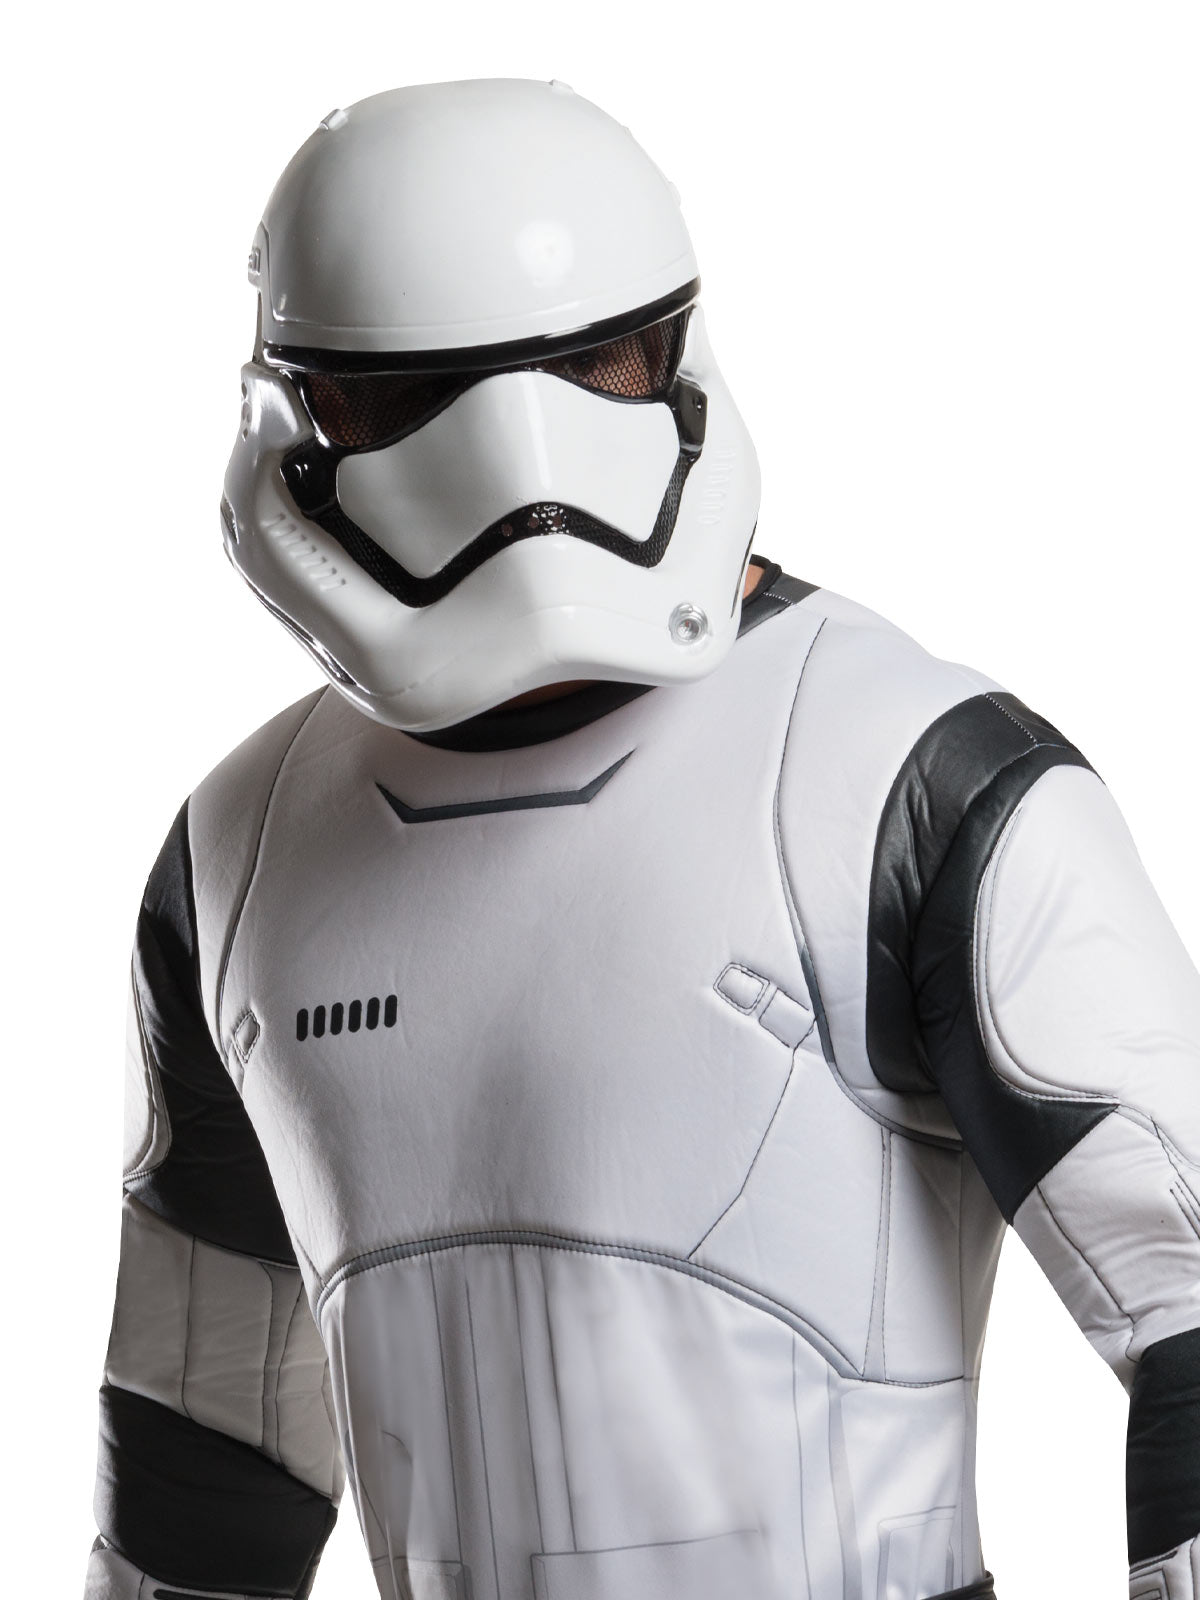 Star Wars Stormtrooper Deluxe Mens Costume